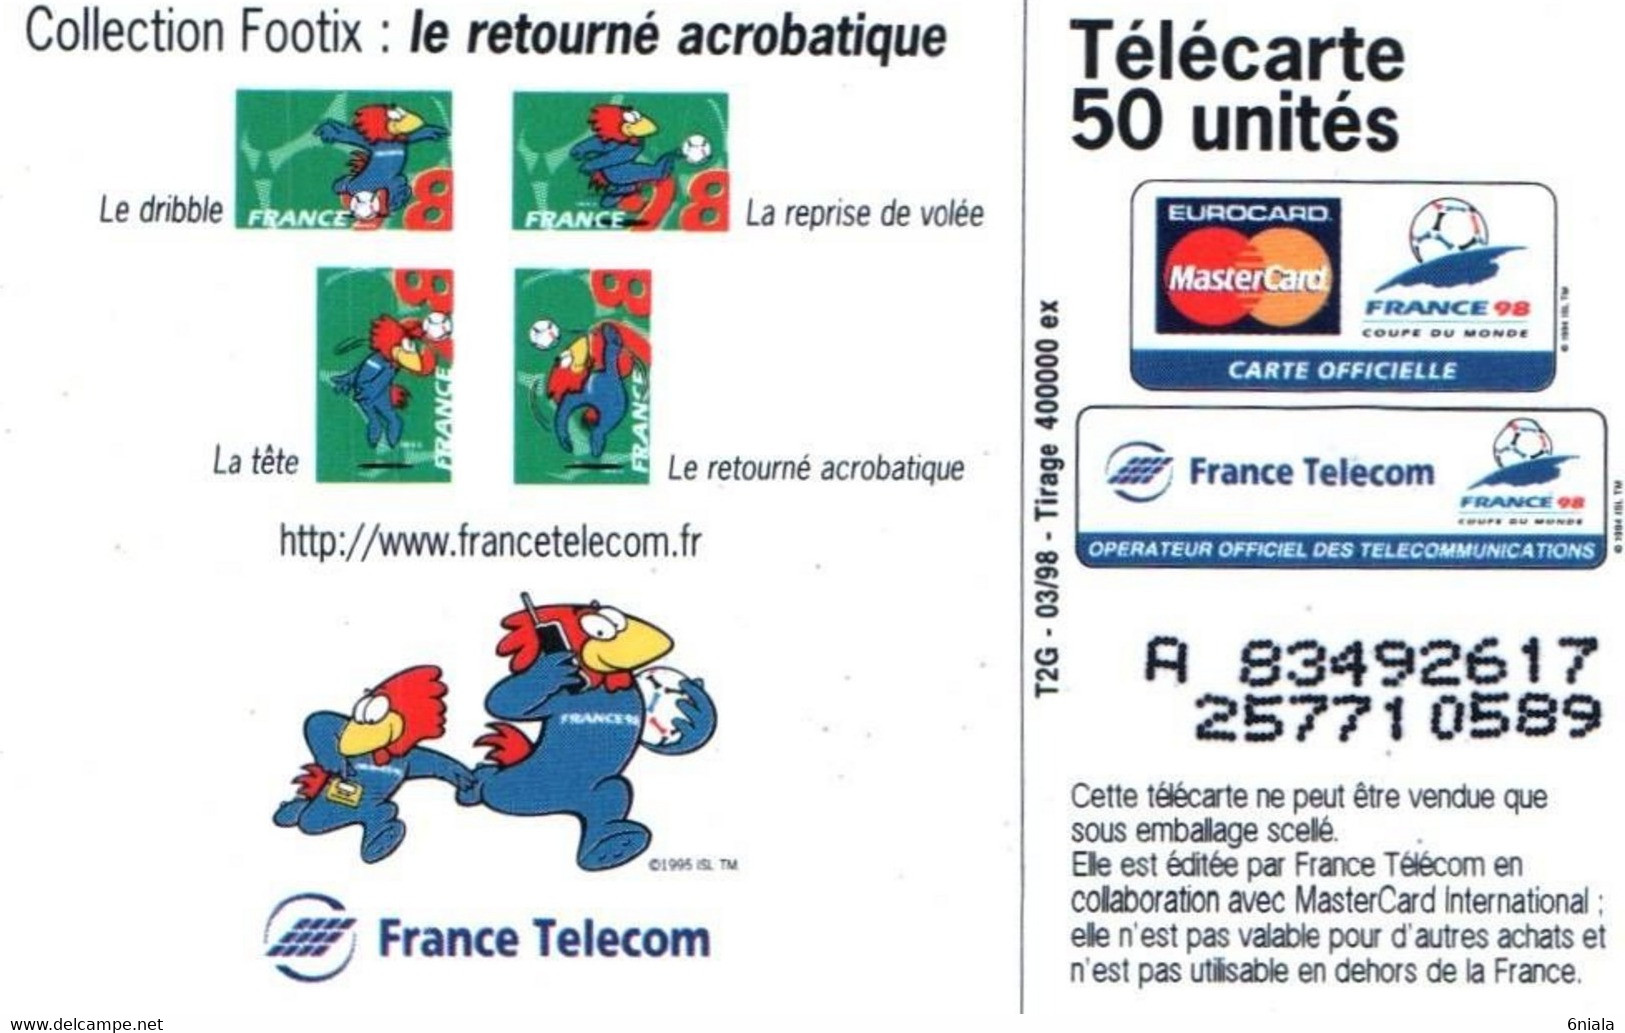 7534 Télécarte  Collection MASCOTTE  FOOT Coupe Du Monde Football Retourné Acrobatique France 98 Footix (Recto Verso) - Sport